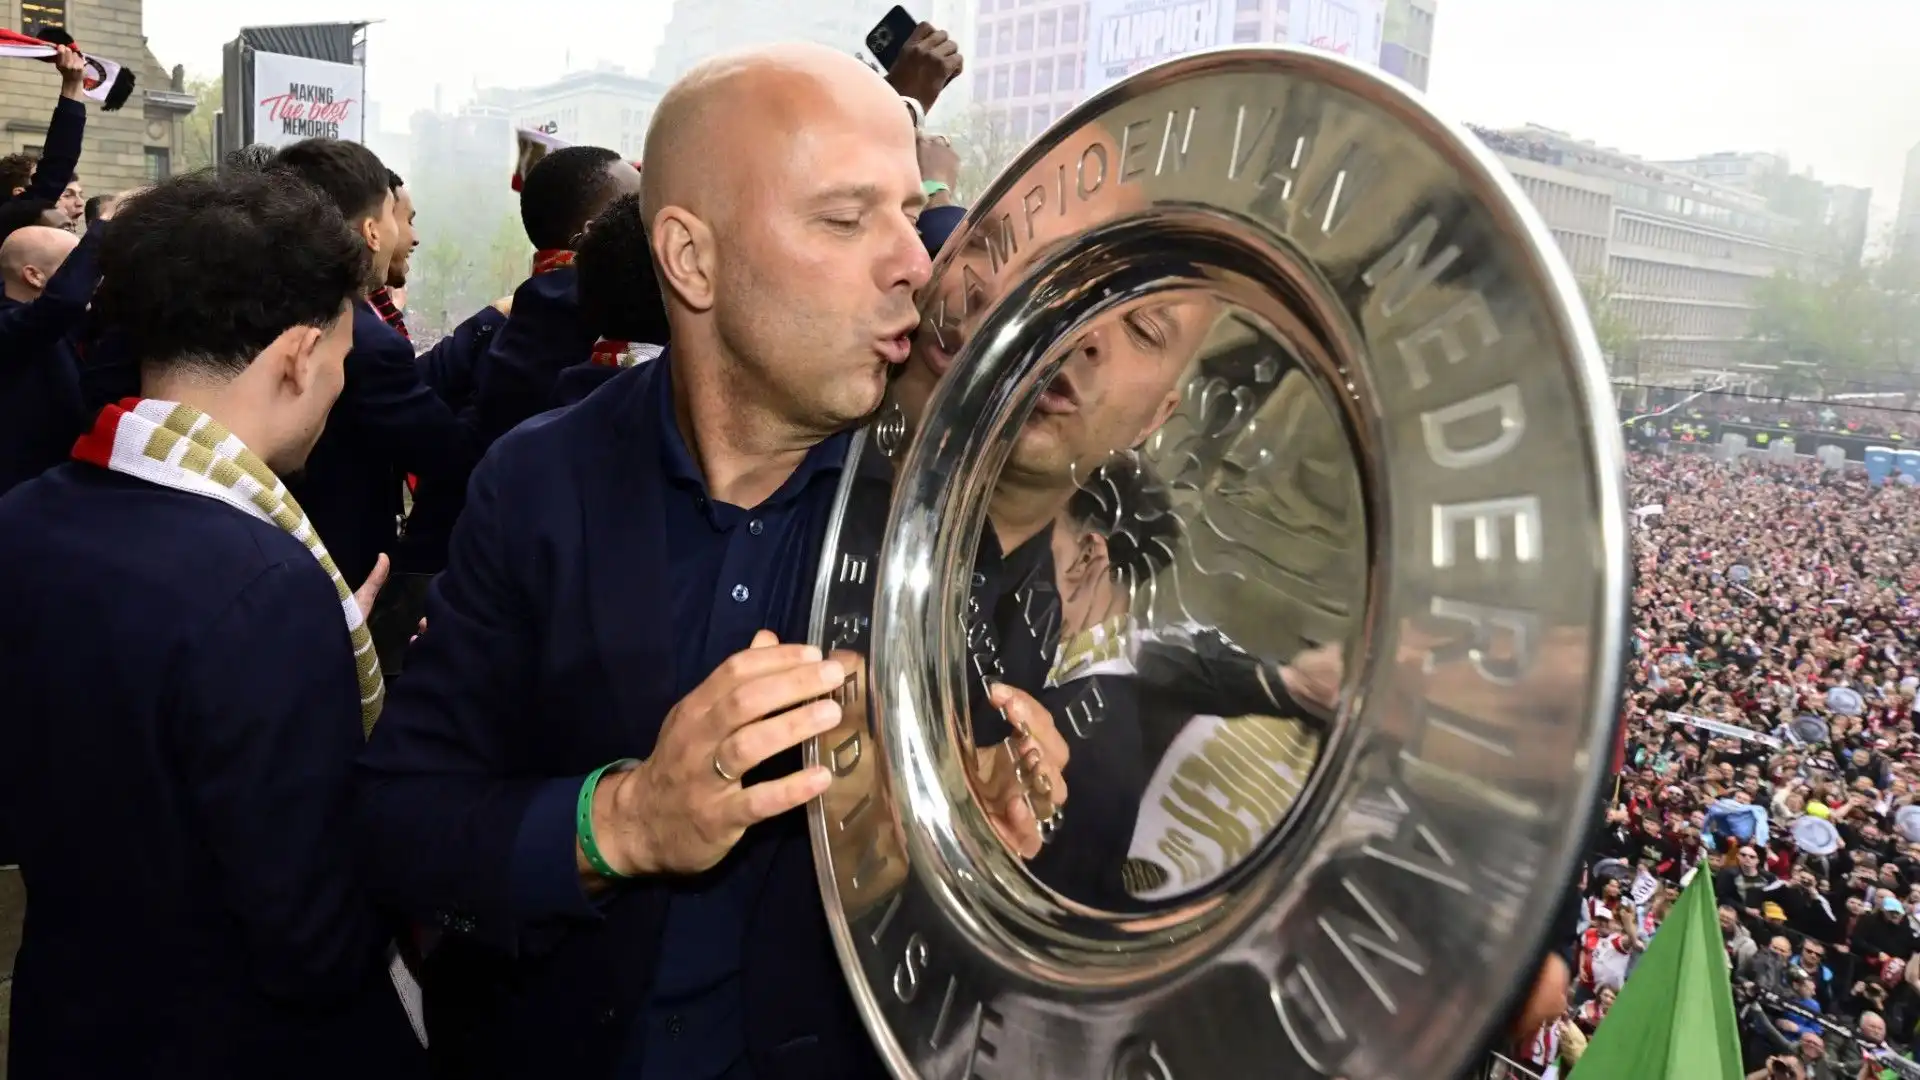 Quest'anno Arne Slot è riuscito a conquistare il campionato grazie all'ottima stagione del suo Feyenoord